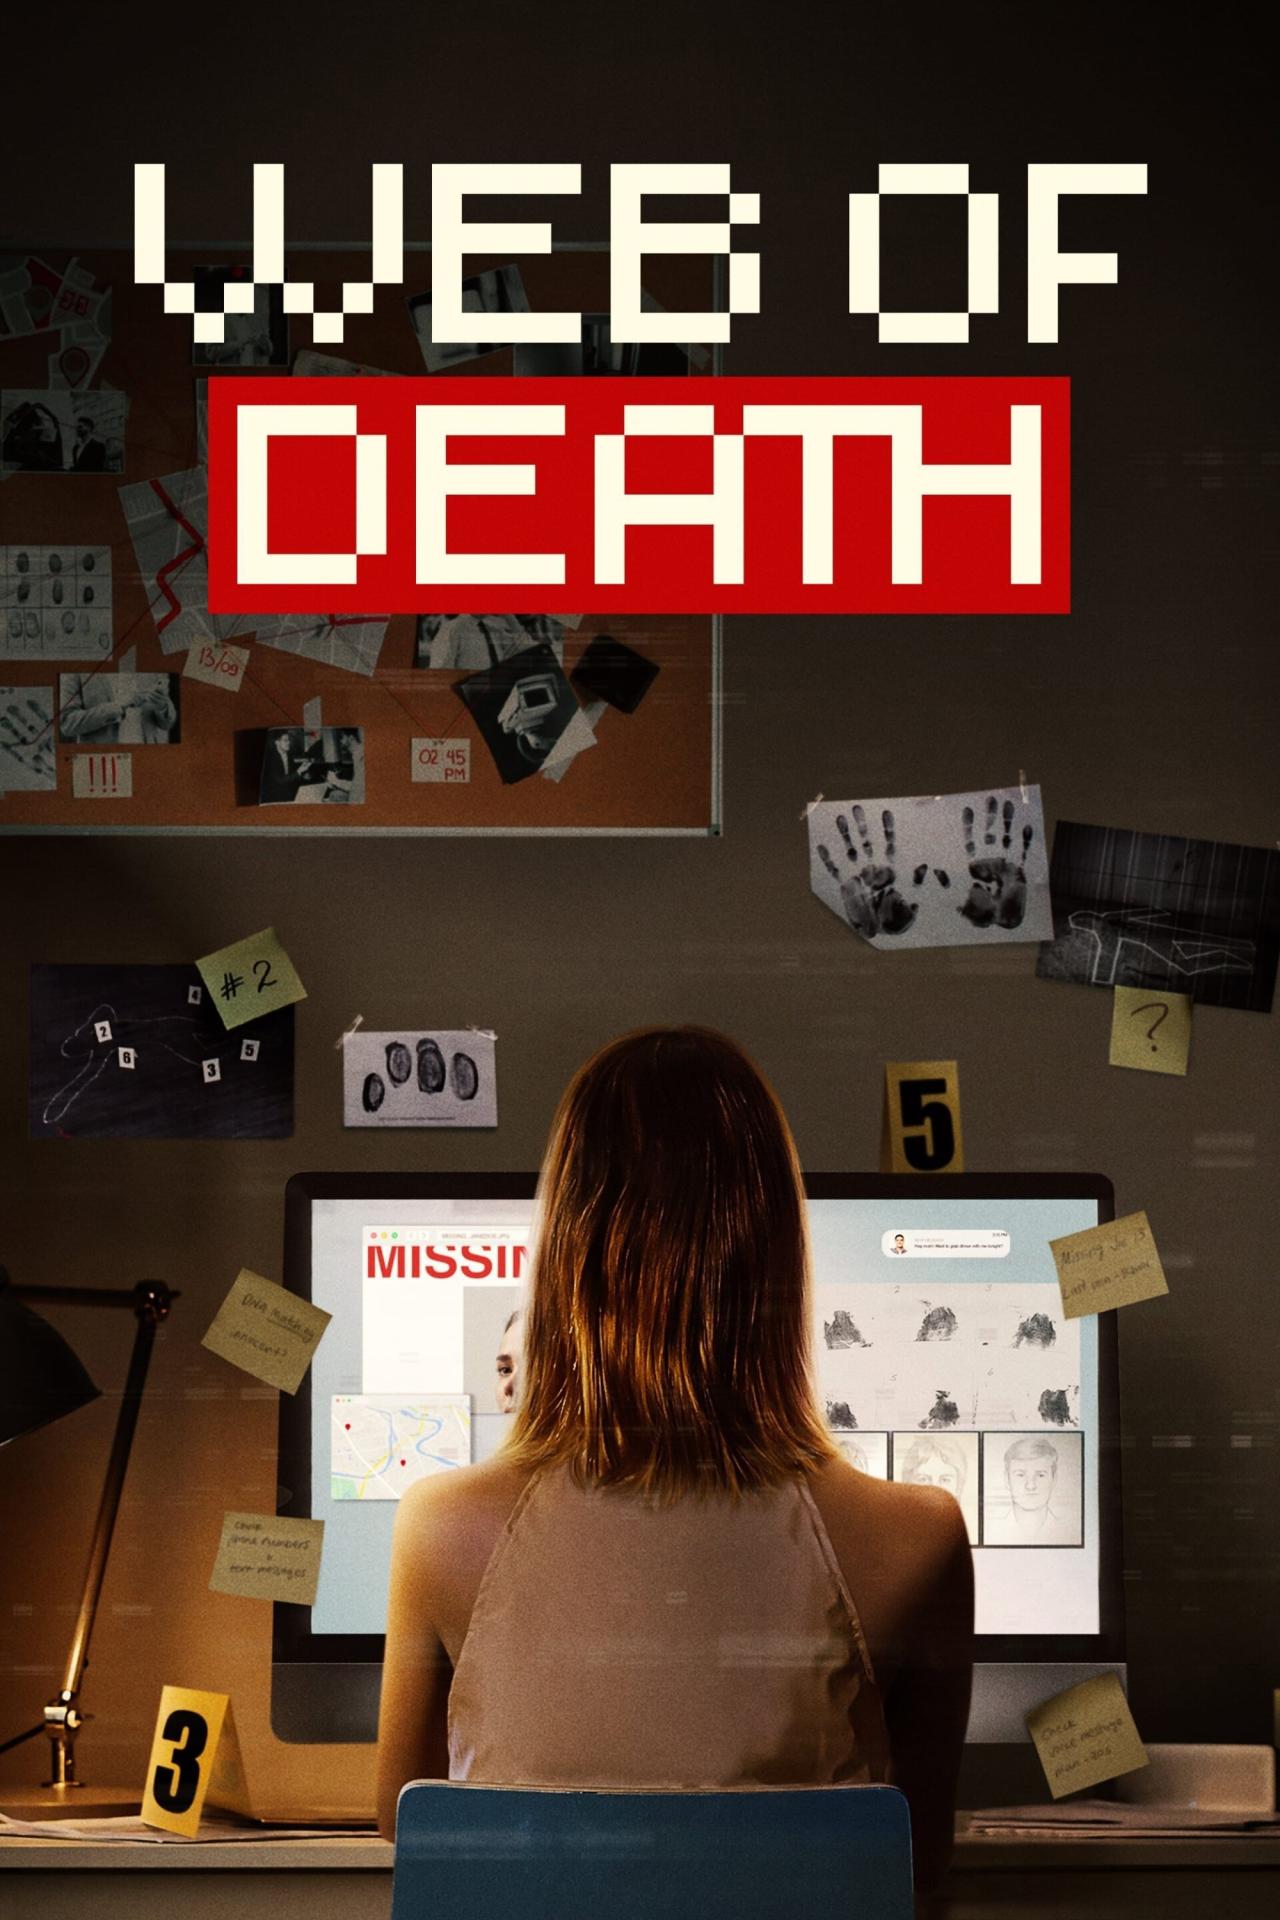 Affiche de la série Web of Death poster